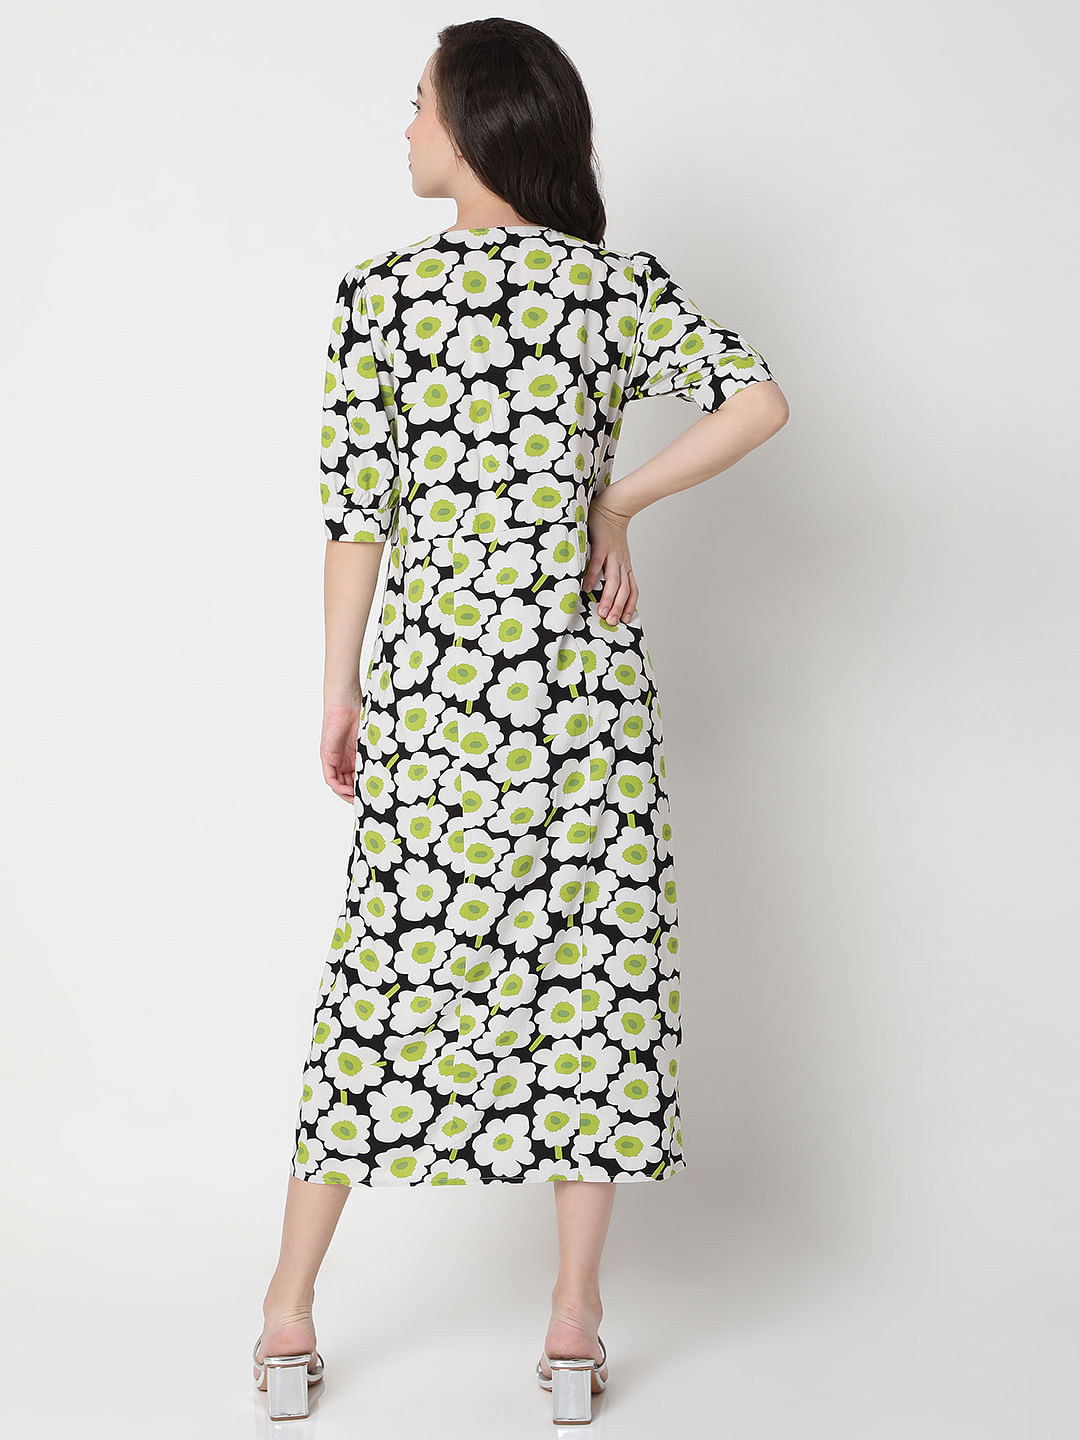 Buy Mustard Floral Print Midi Dress Online - Label Ritu Kumar India Store  View